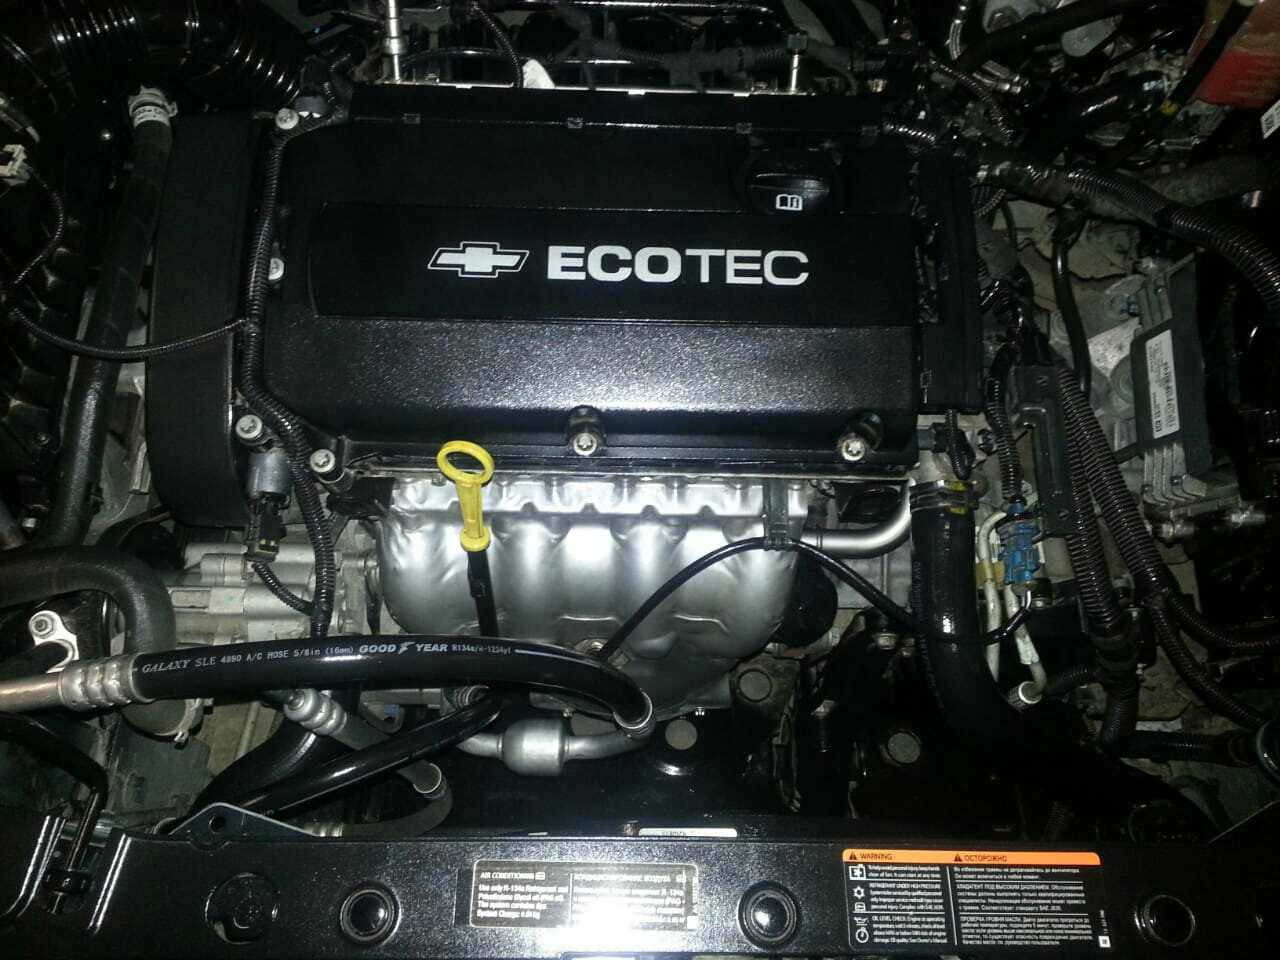 16 16V Ecotec  Twinport  Turbo GM  история, проблемы и неисправности Официальным дебютом двигателя Ecotec считается 1994 год Но на самом деле его